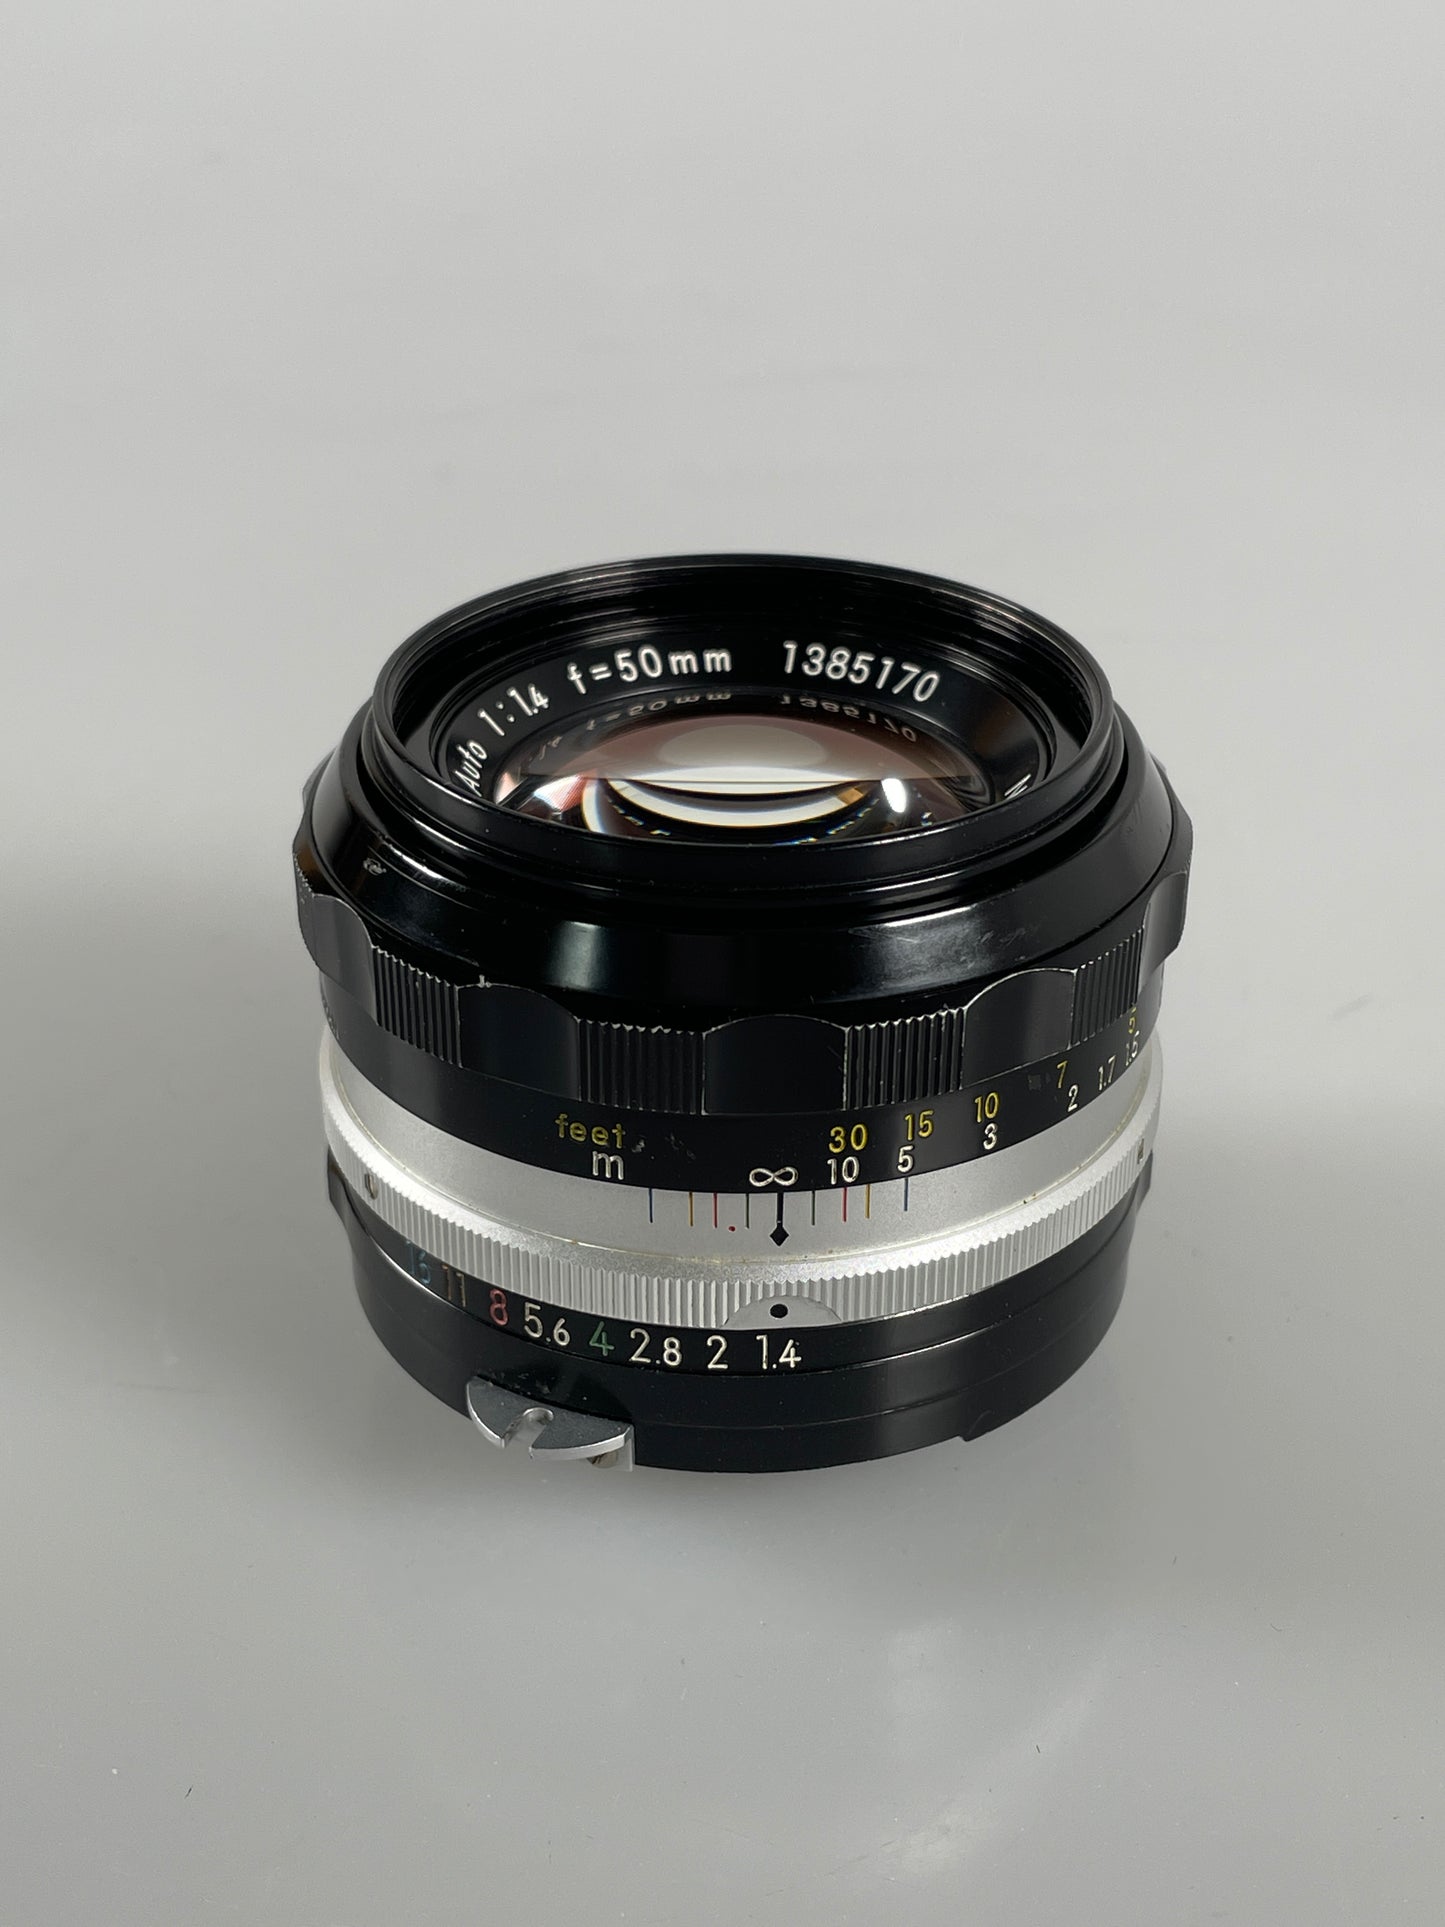 Nikon Nikkor S C Auto AI 50mm f1.4 Lens Prime SLR